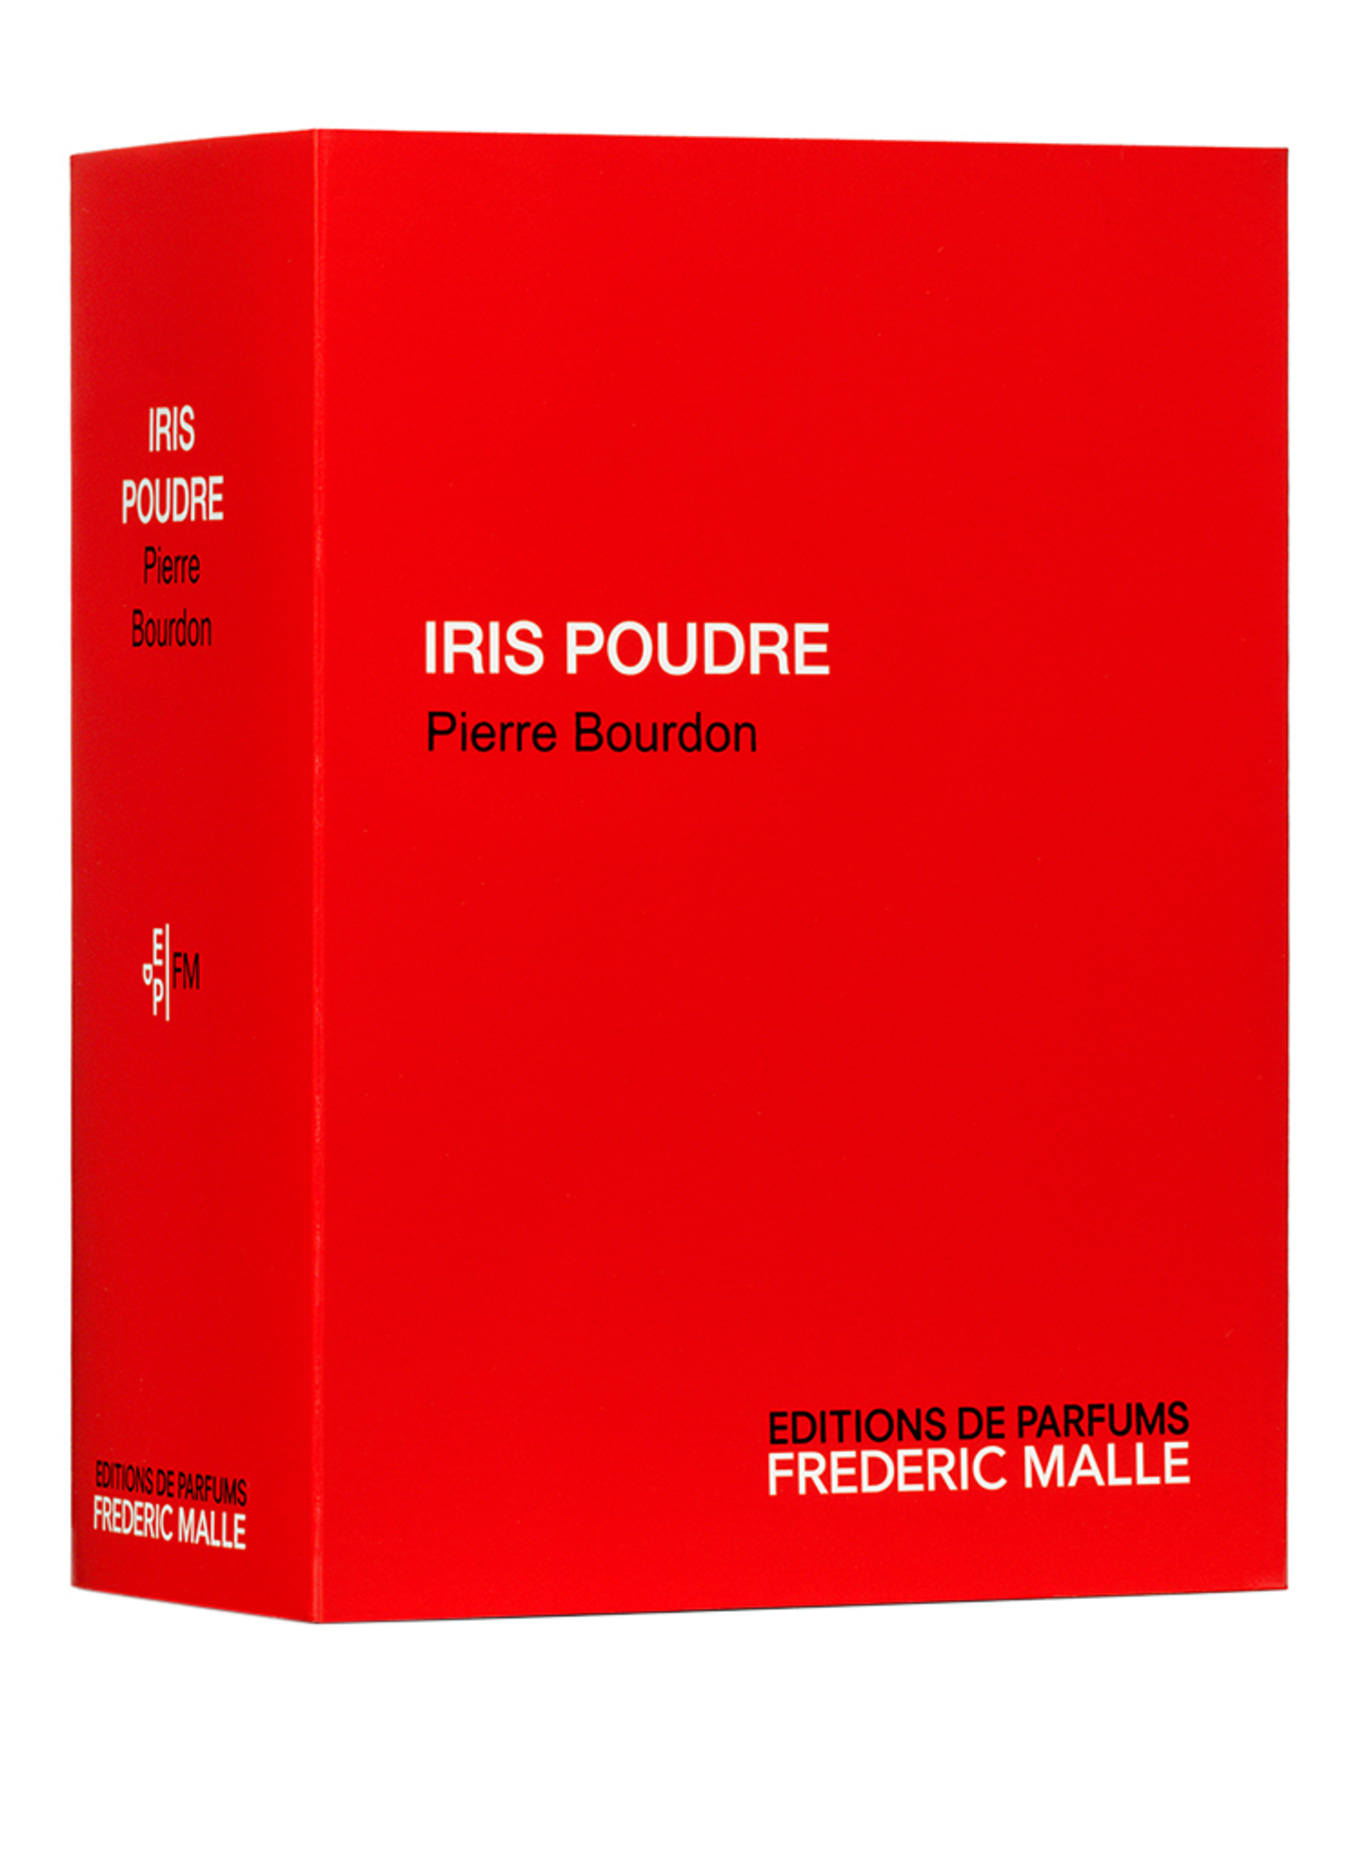 EDITIONS DE PARFUMS FREDERIC MALLE POUDRE (Obrazek 2)